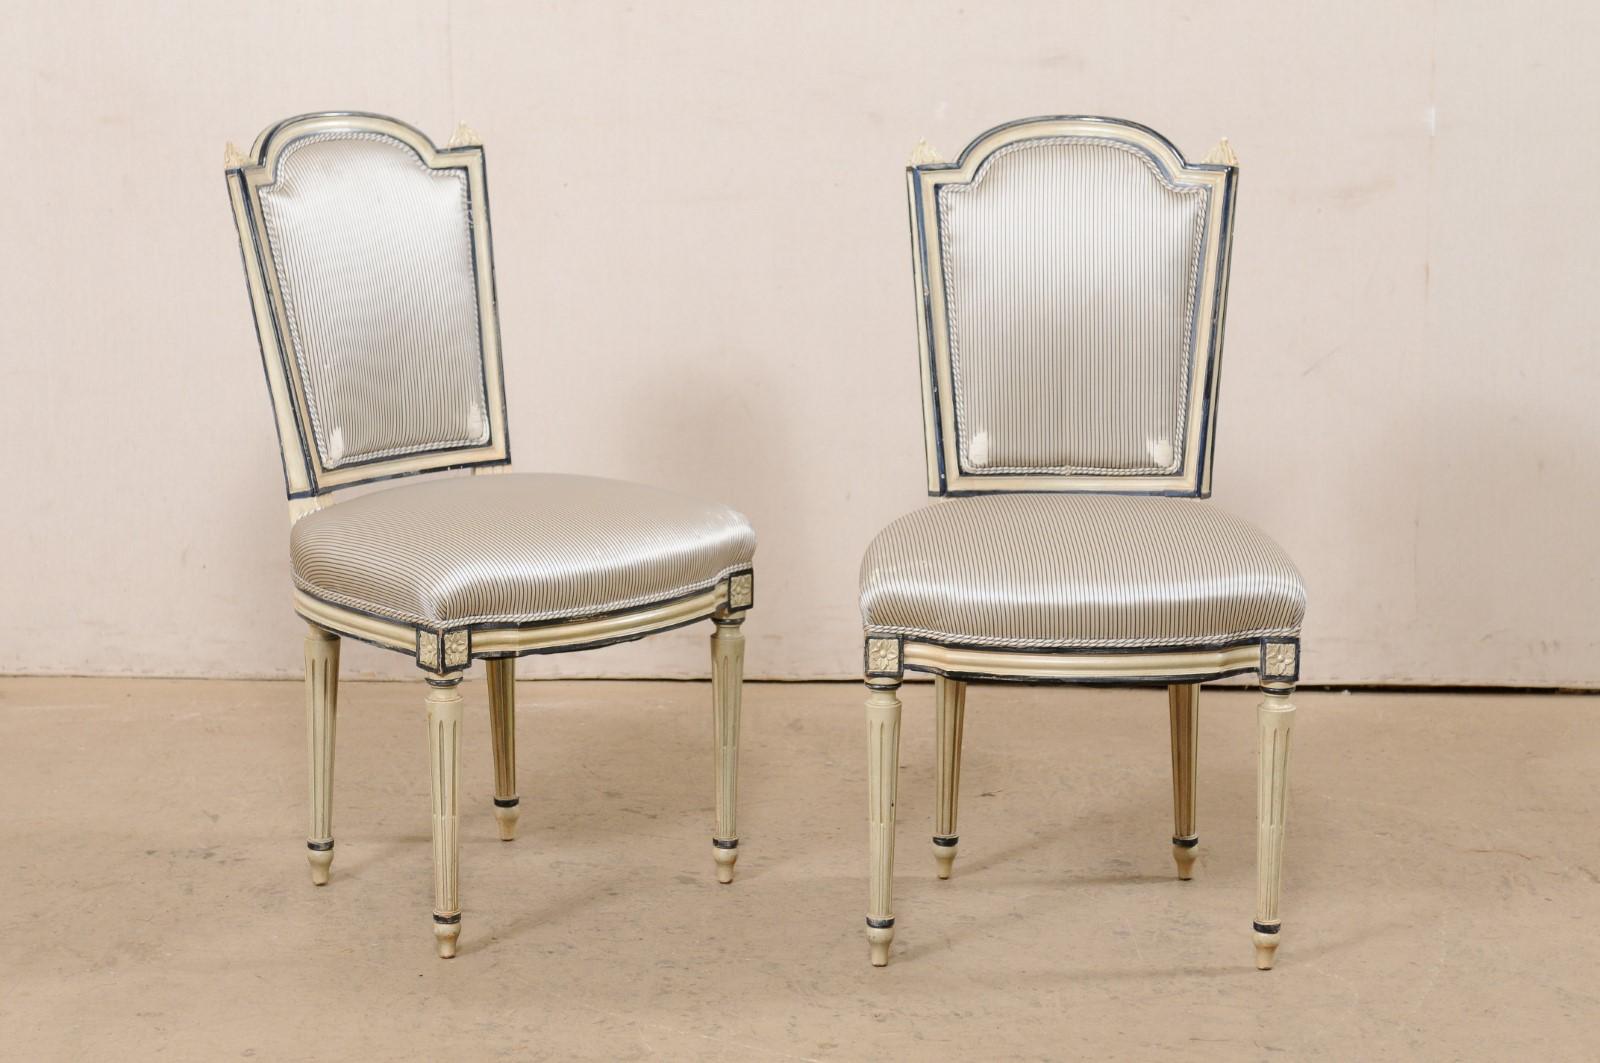 Un ensemble français de quatre chaises d'appoint en bois sculpté et rembourré du milieu du 20e siècle. Cet ensemble de chaises vintage de France a un dossier encadré en bois sculpté, avec des rails supérieurs arqués larges et allongés et des épis de